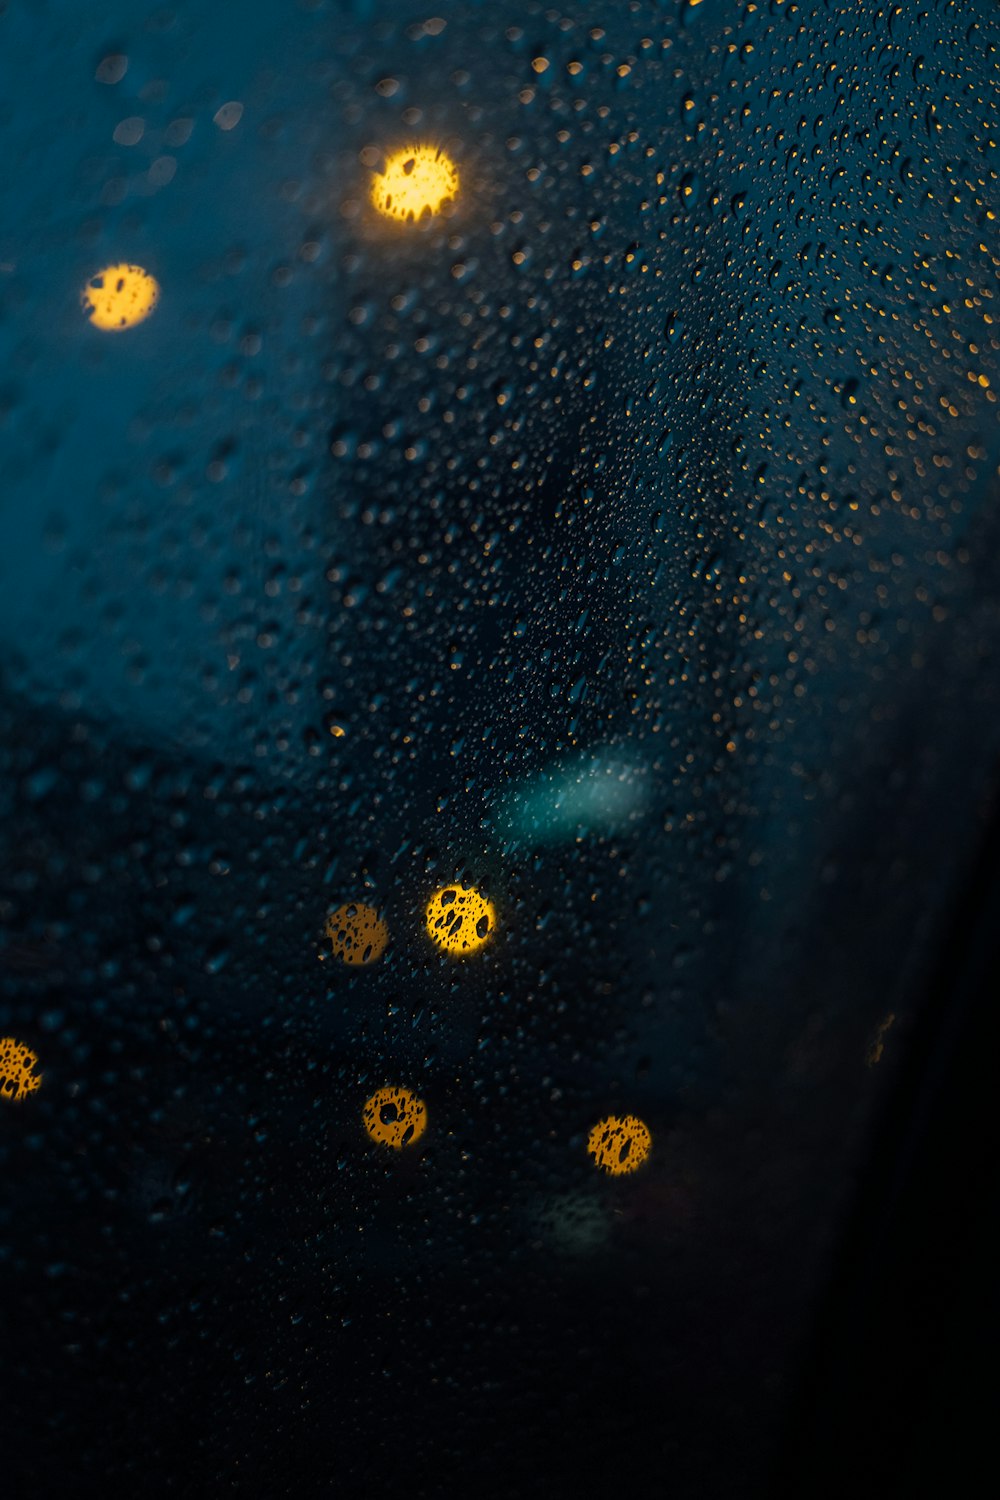 La pioggia cade su una finestra con luci gialle